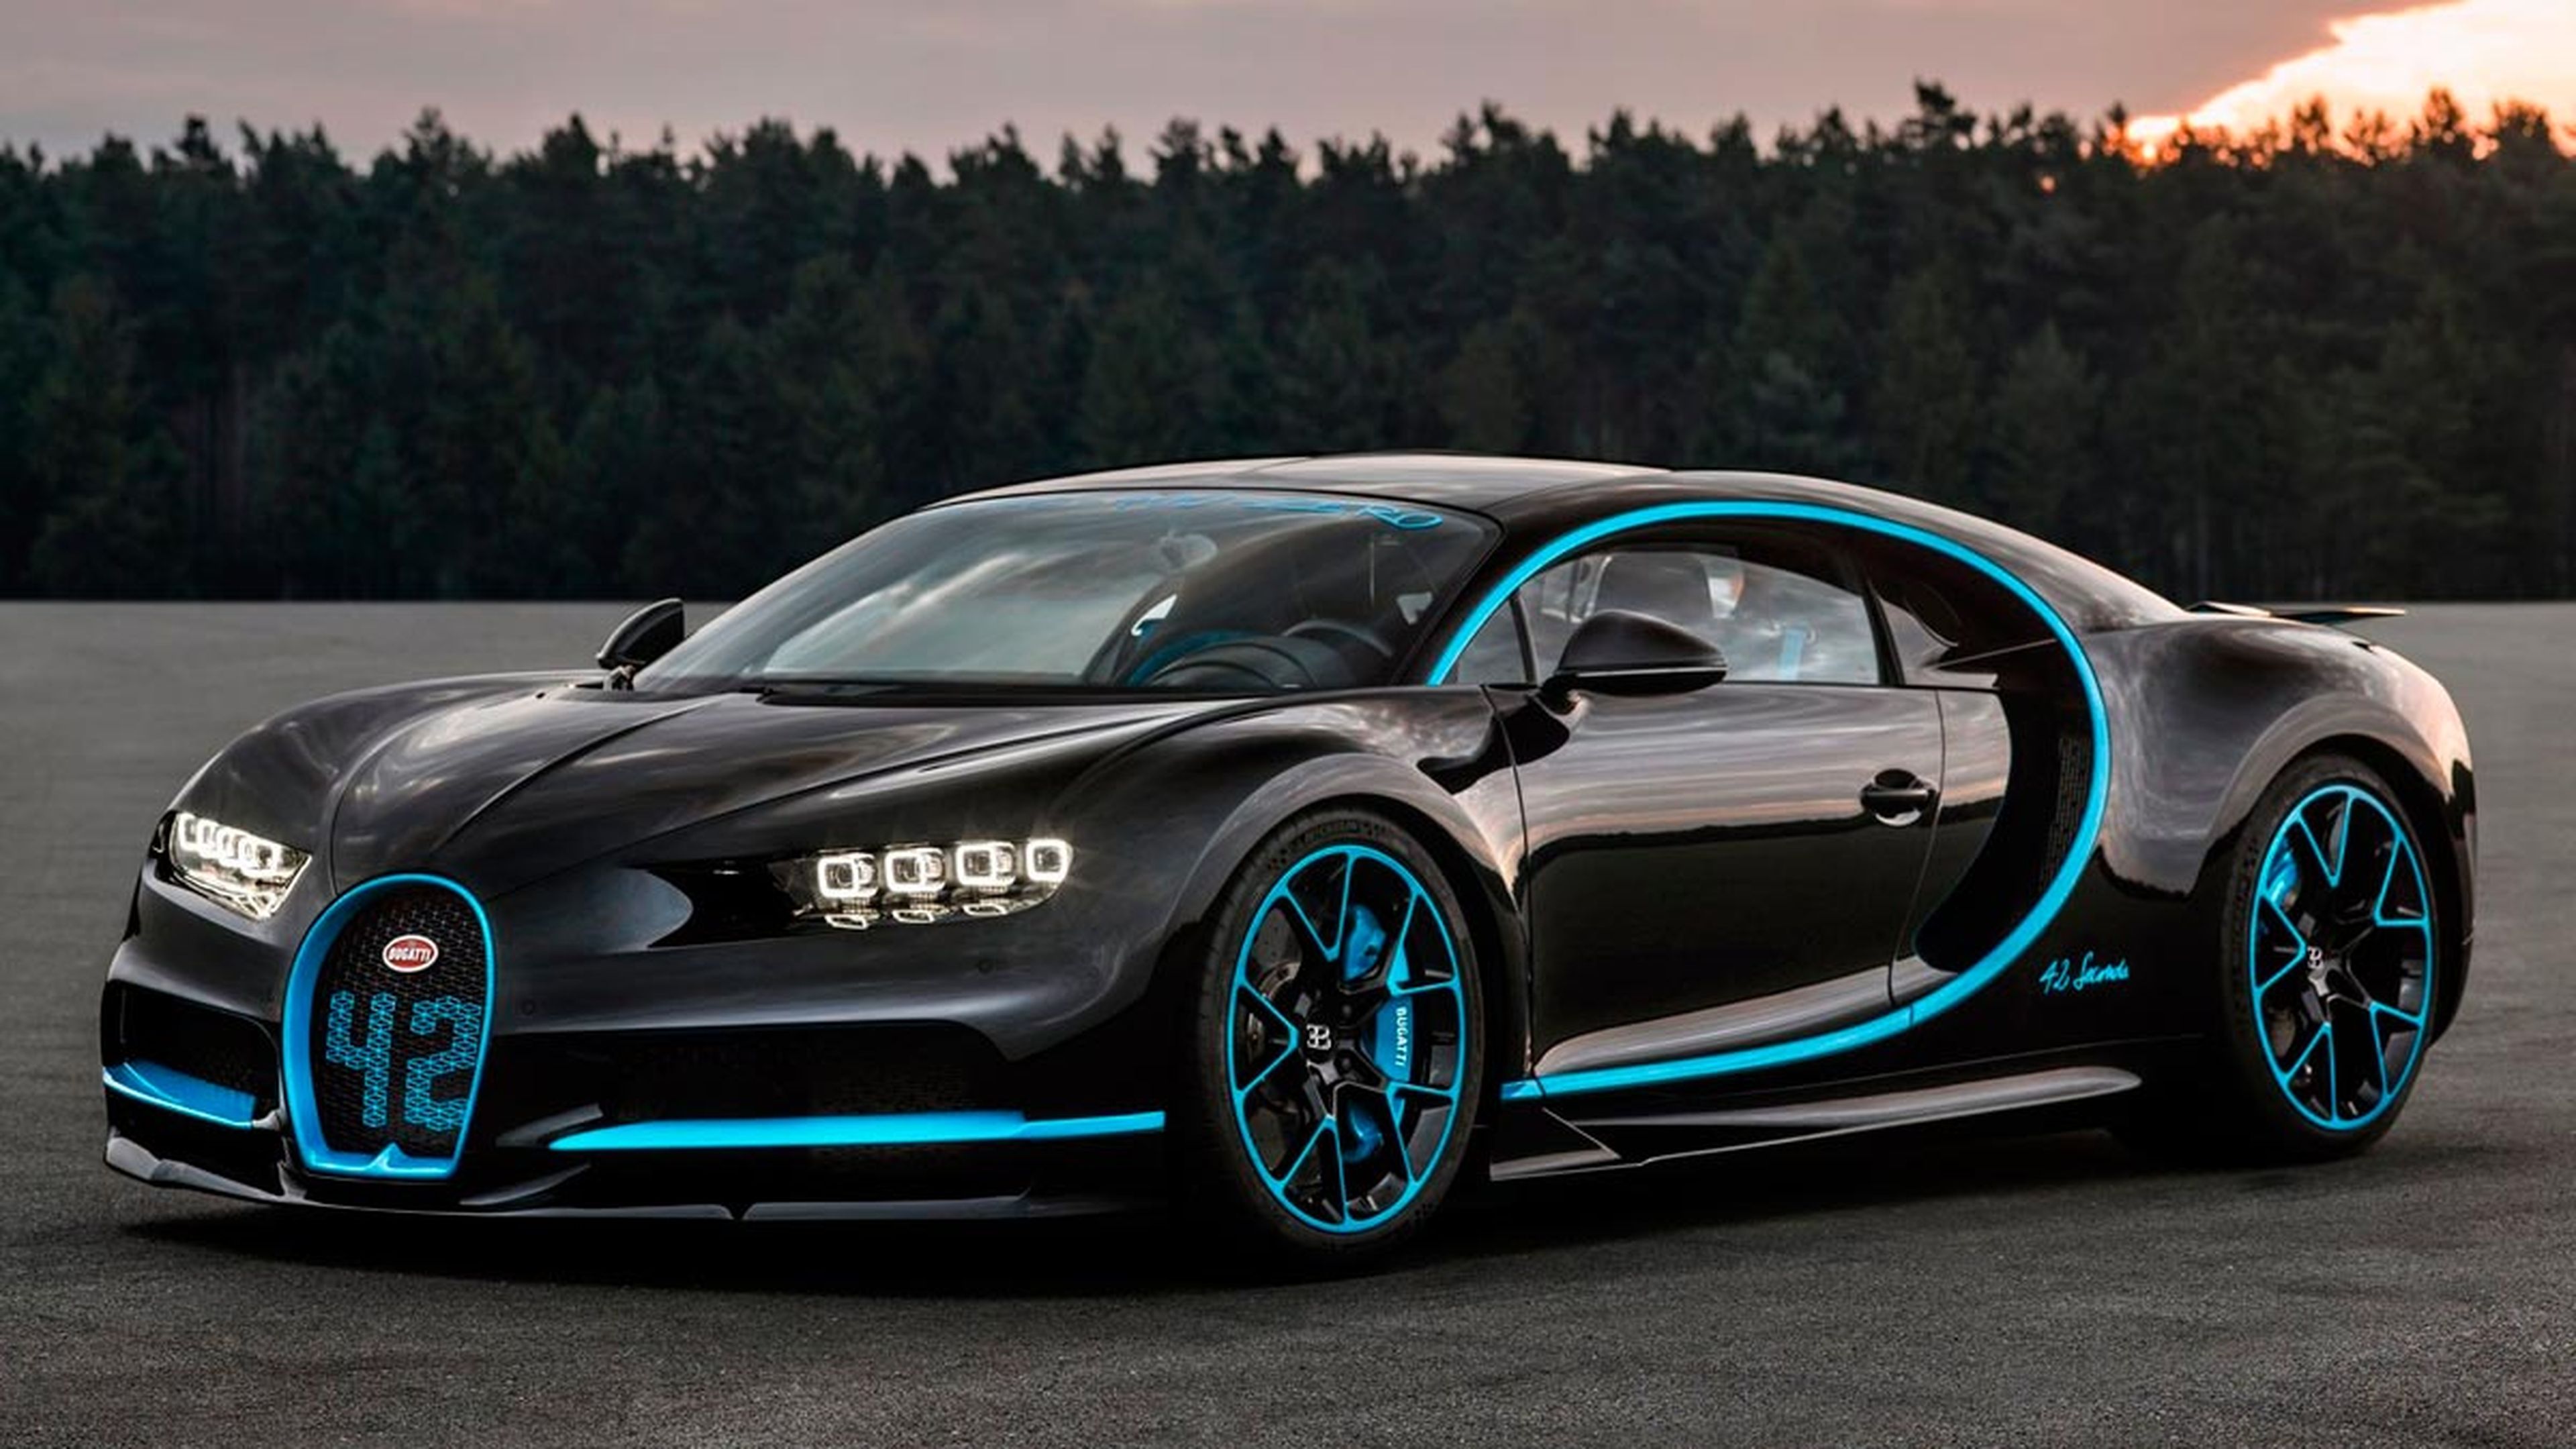 Los coches de famosos que compraríamos los españoles: Bugatti Chiron de Cristiano Ronaldo